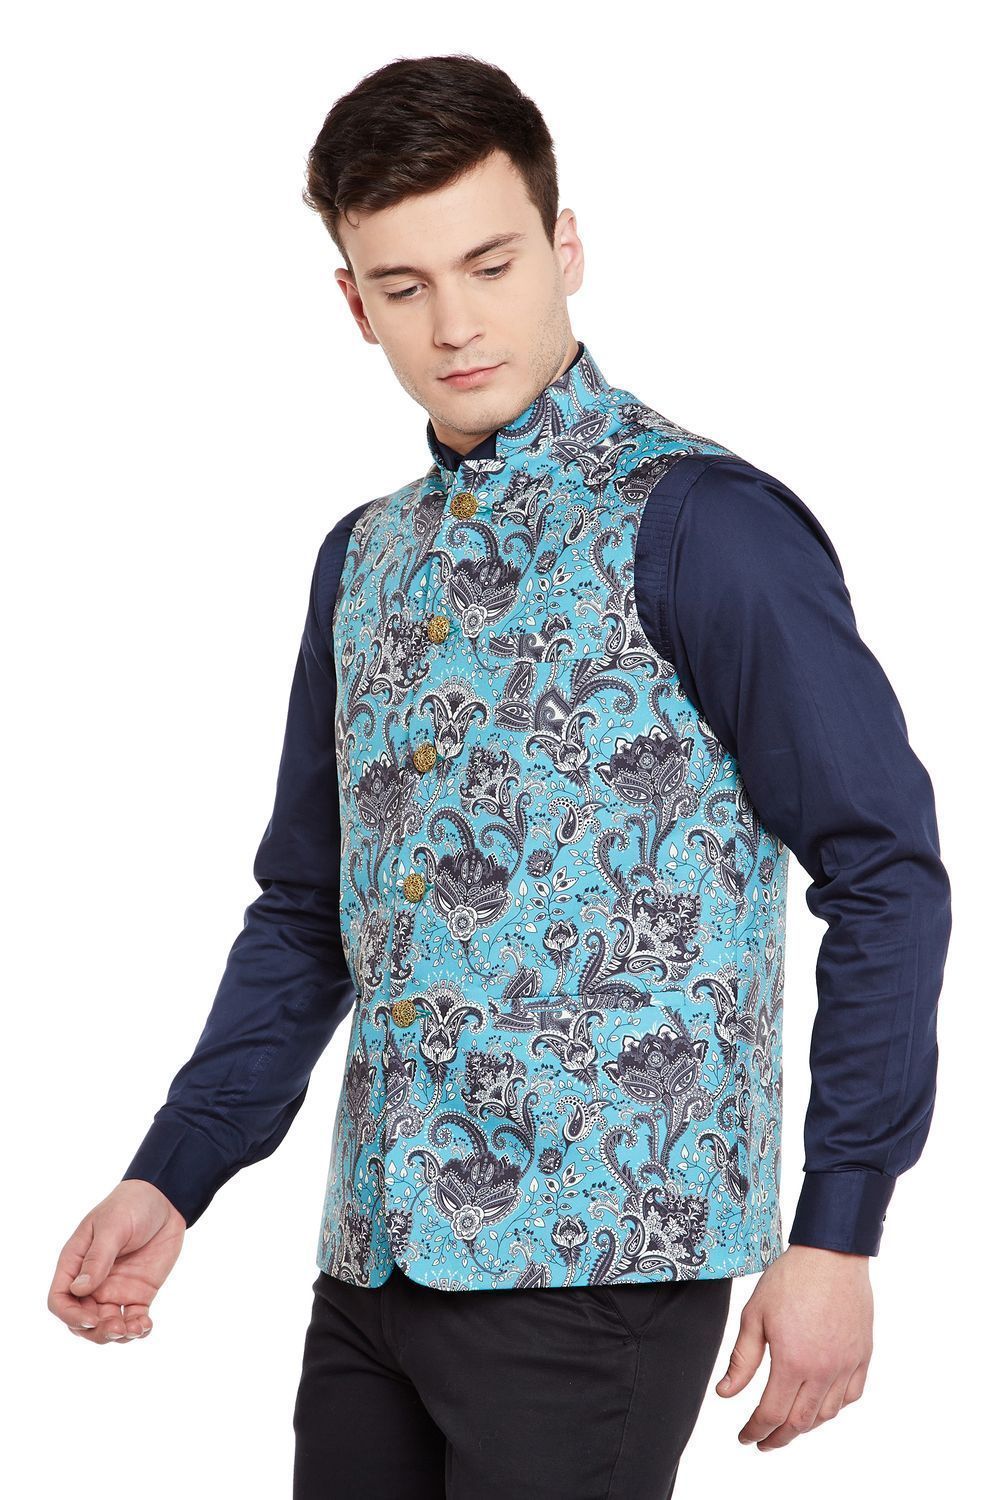 Imported Rayon MulticolouRed Nehru Jacket